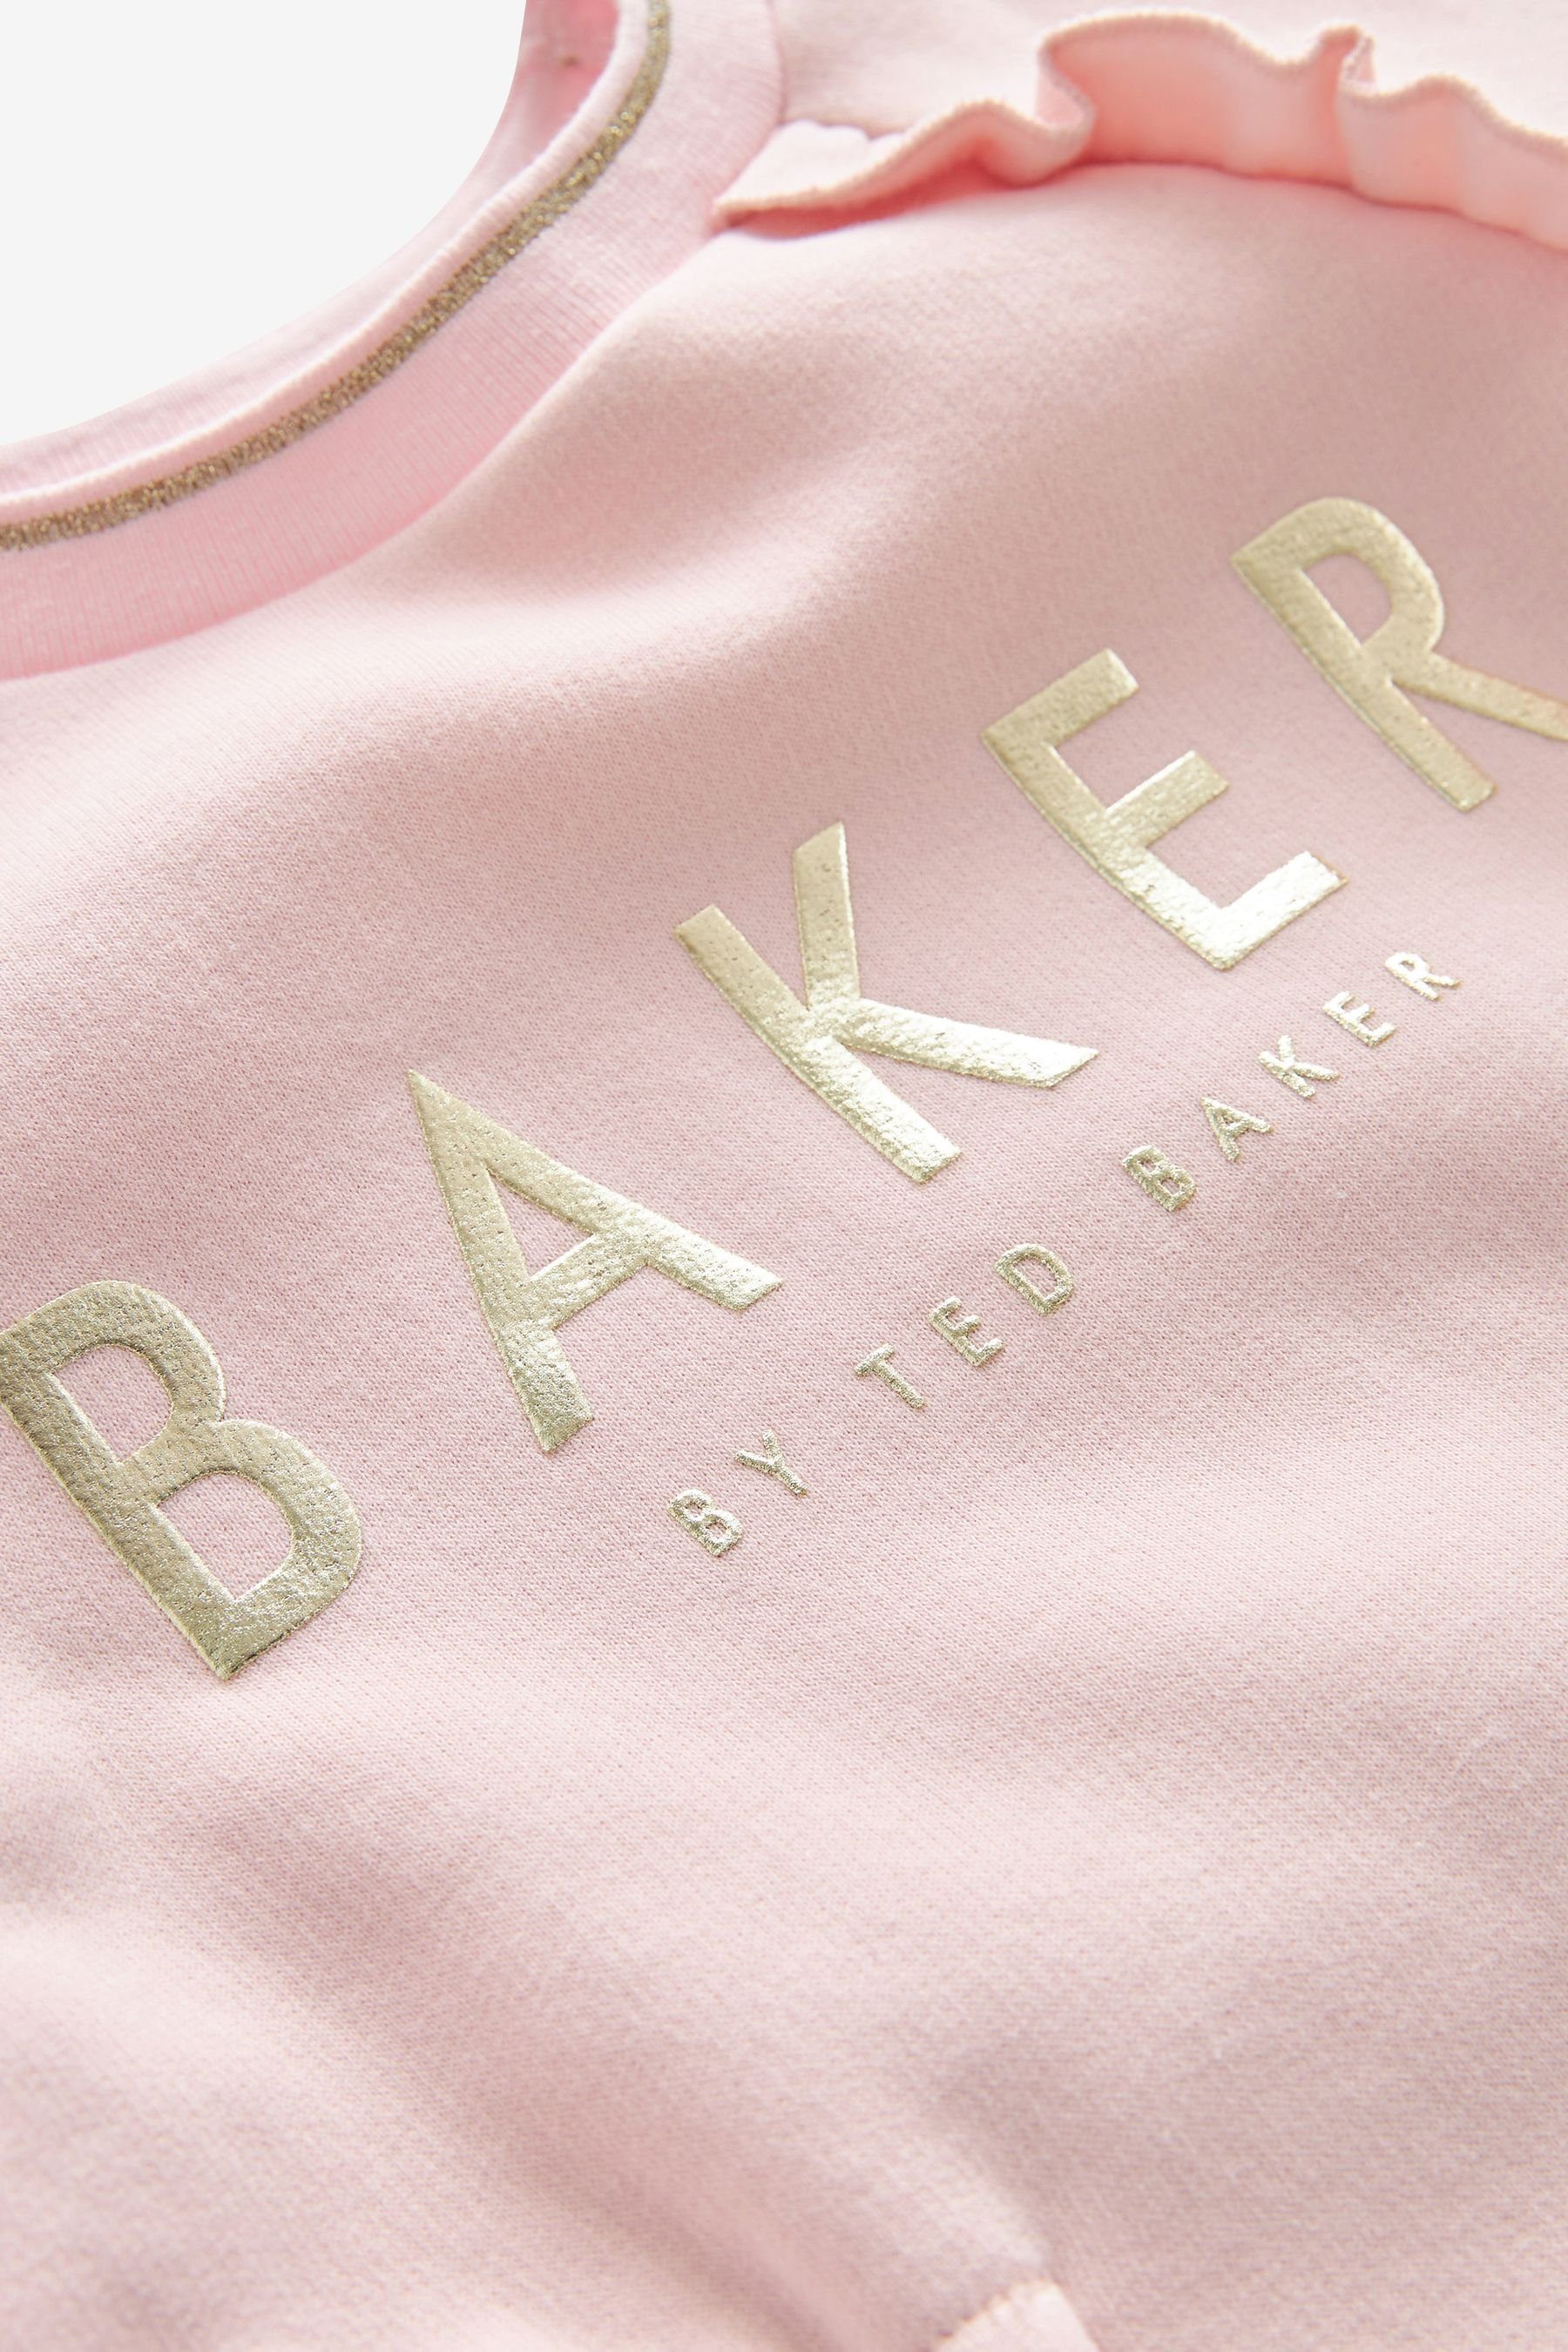 by by Baker Ted Sweatkleid (1-tlg) Ted Baker Baker Baker Sweatshirtkleid